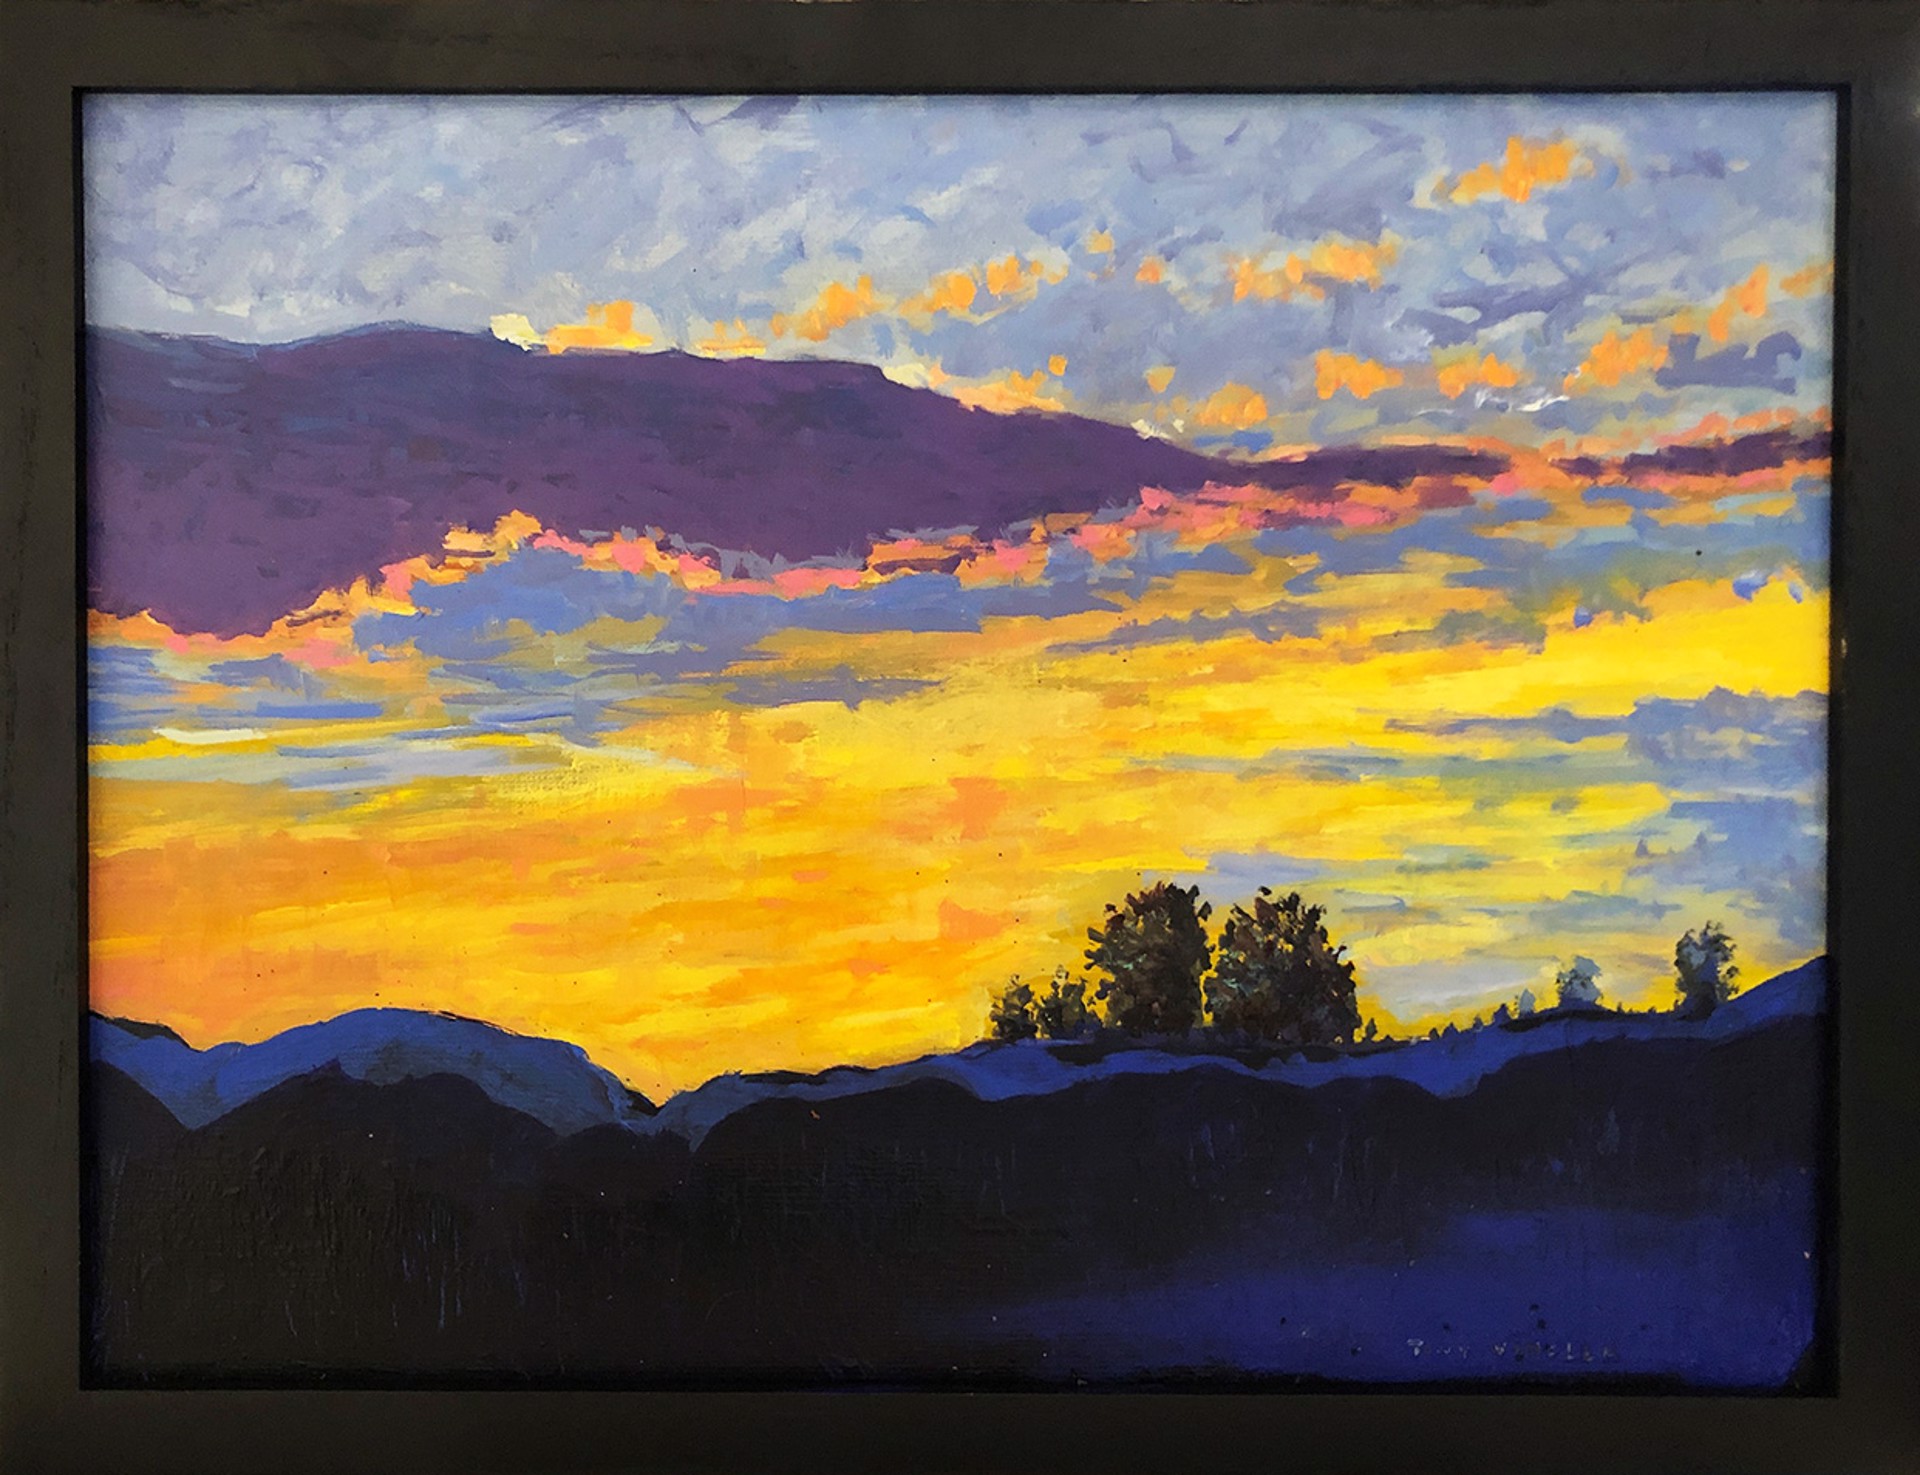 Santa Fe Sunset by Tony Vinella